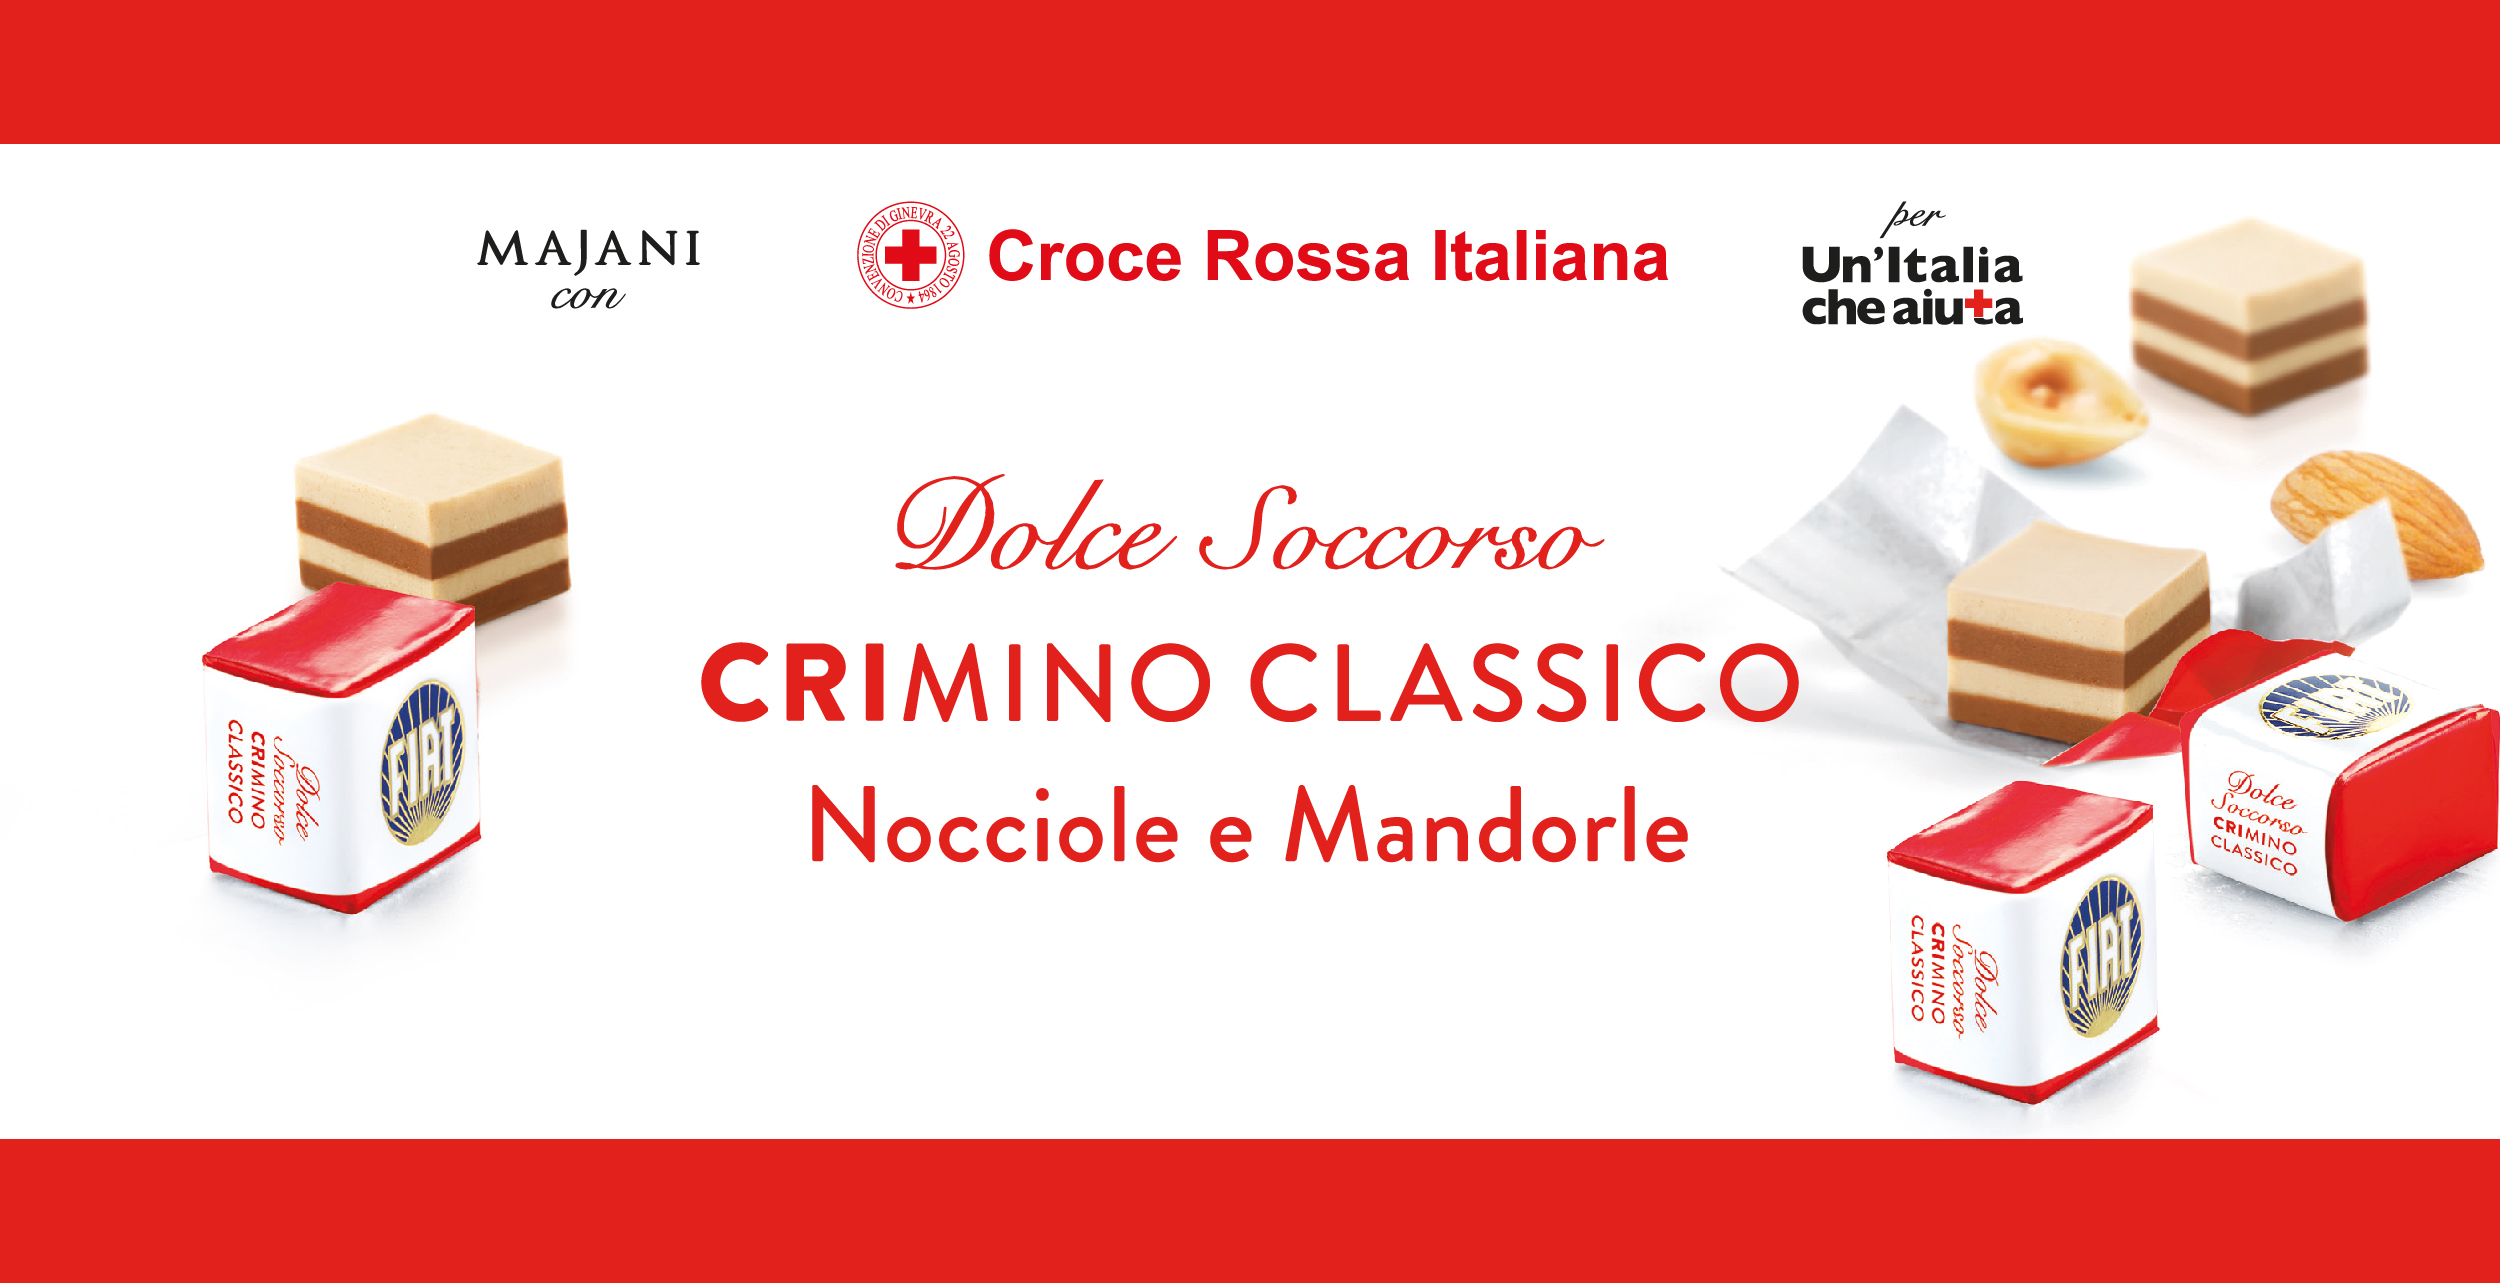 Arriva il CRIMINO che fa bene al cuore: Croce Rossa Italiana e Majani insieme per un Dolce Soccorso